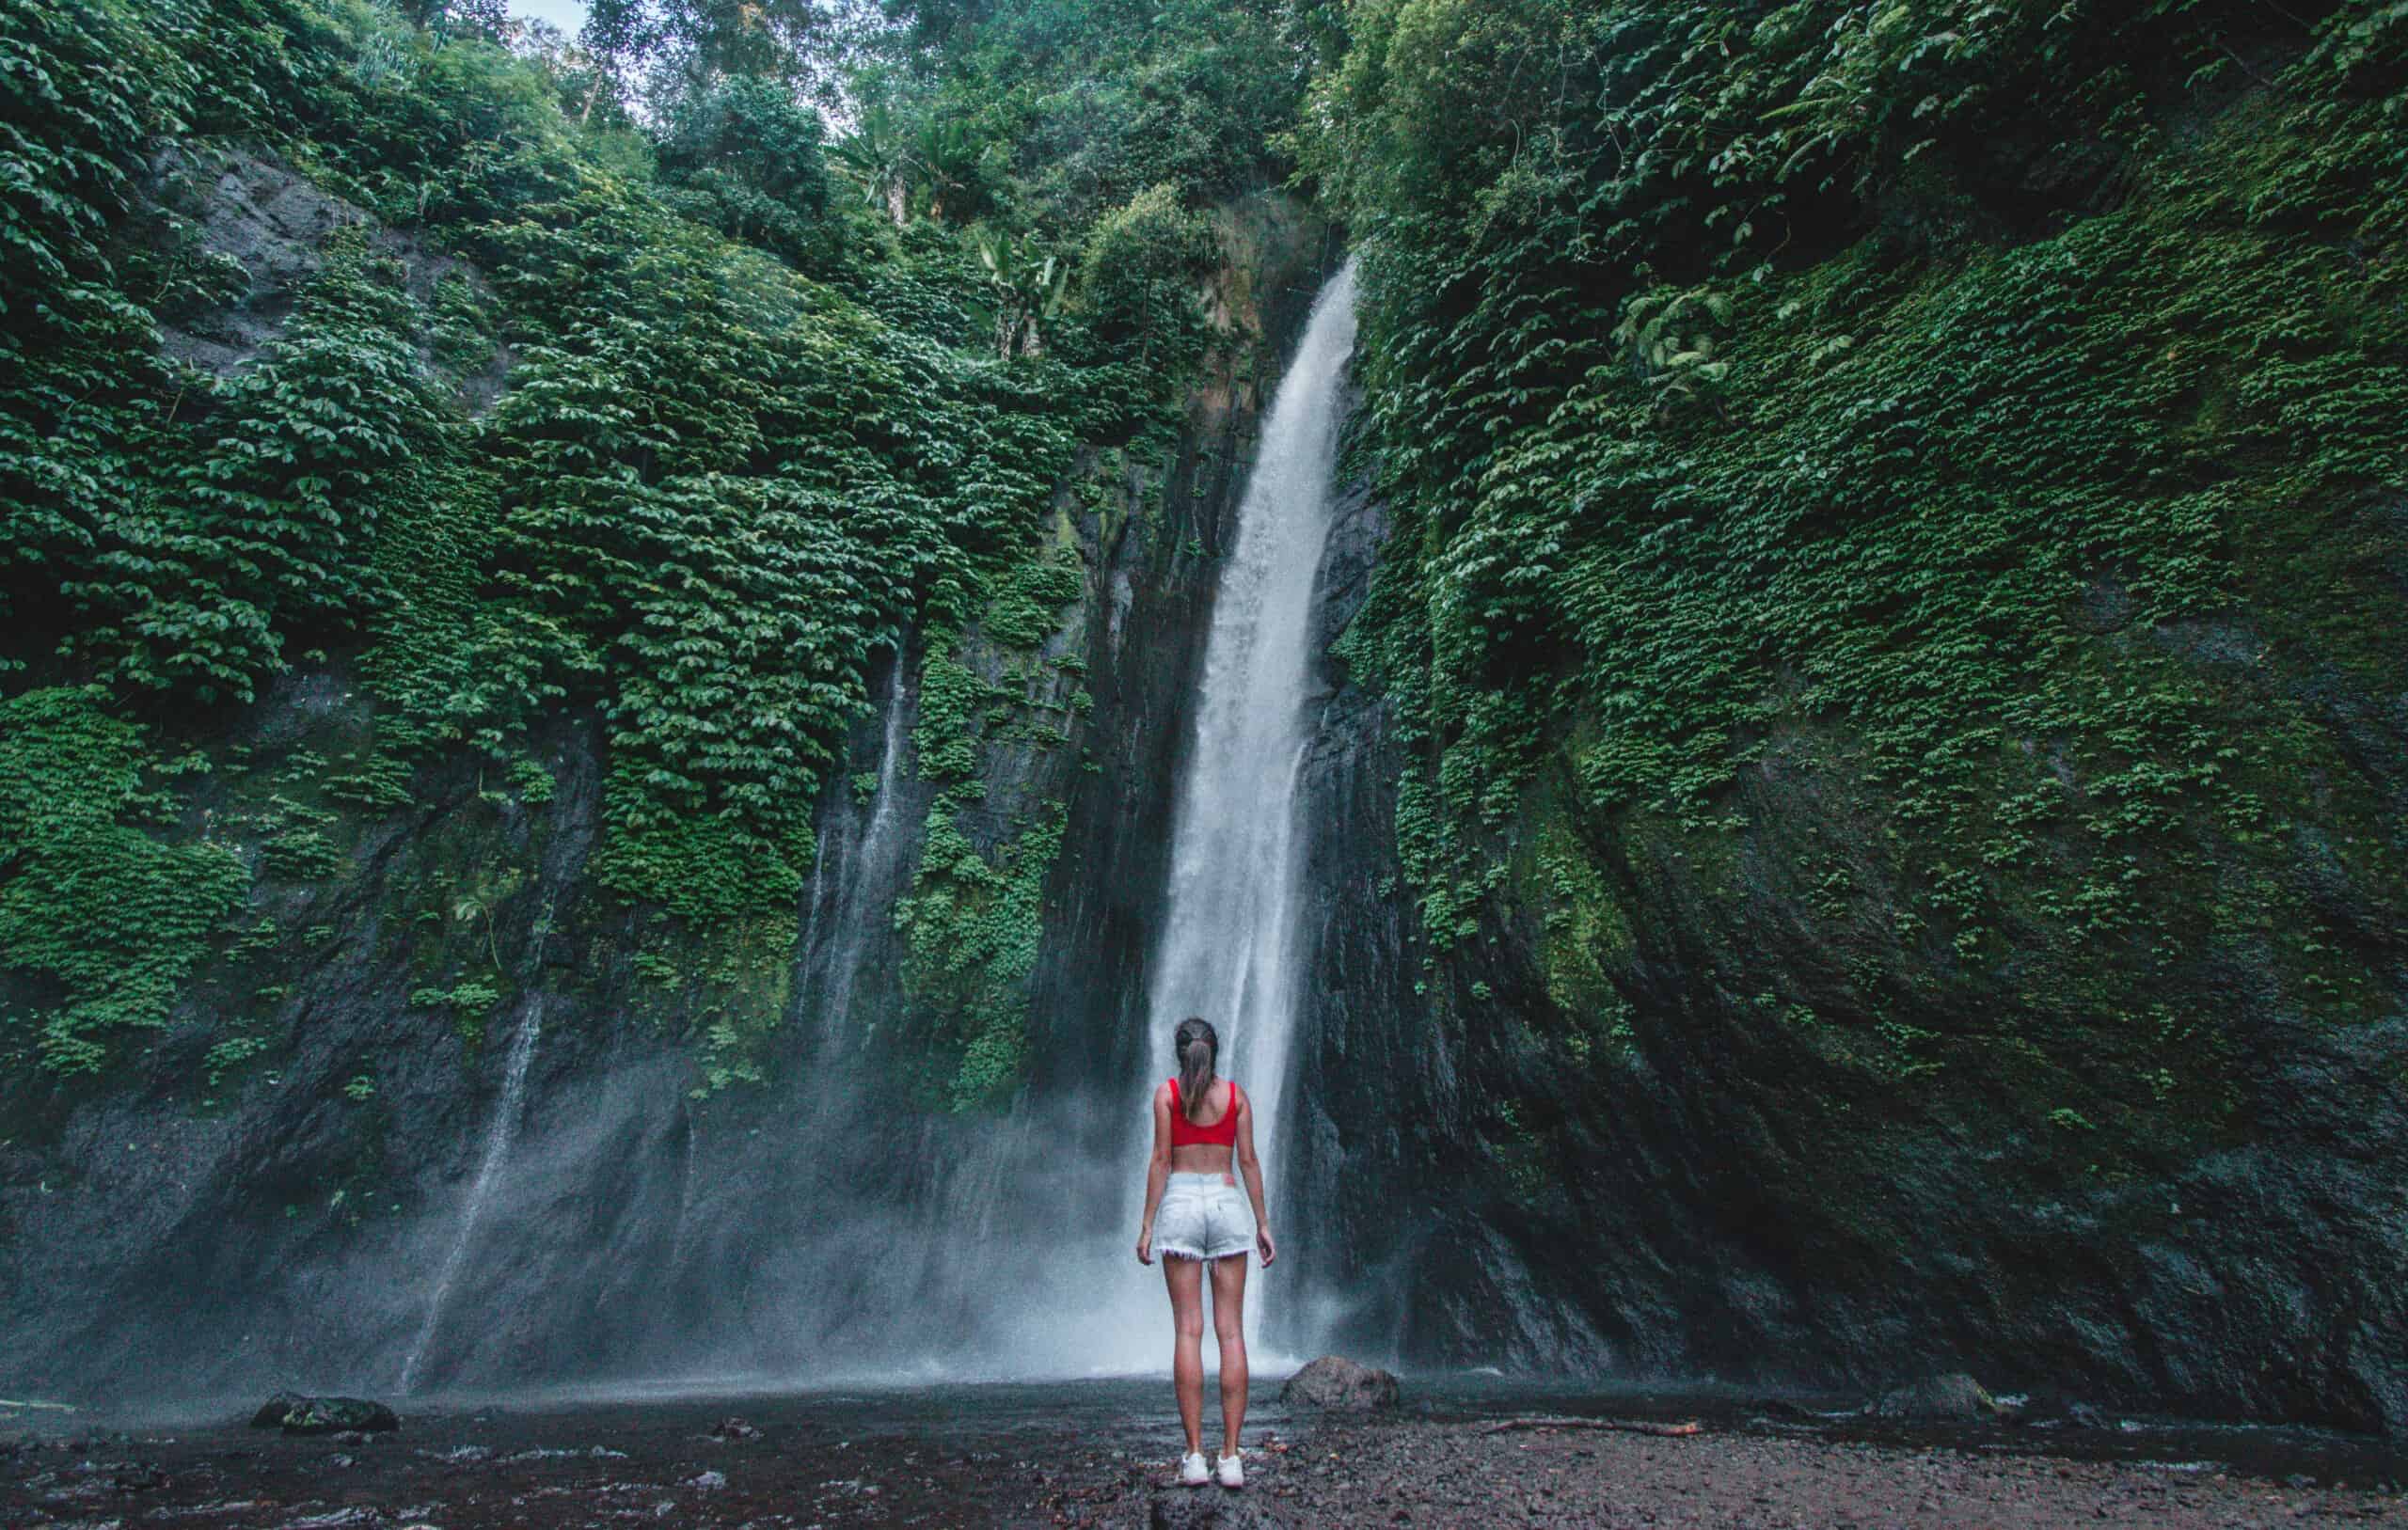 Kinh nghiệm đi tour du lịch những thác nước đẹp ở Bali - Munduk Waterfall